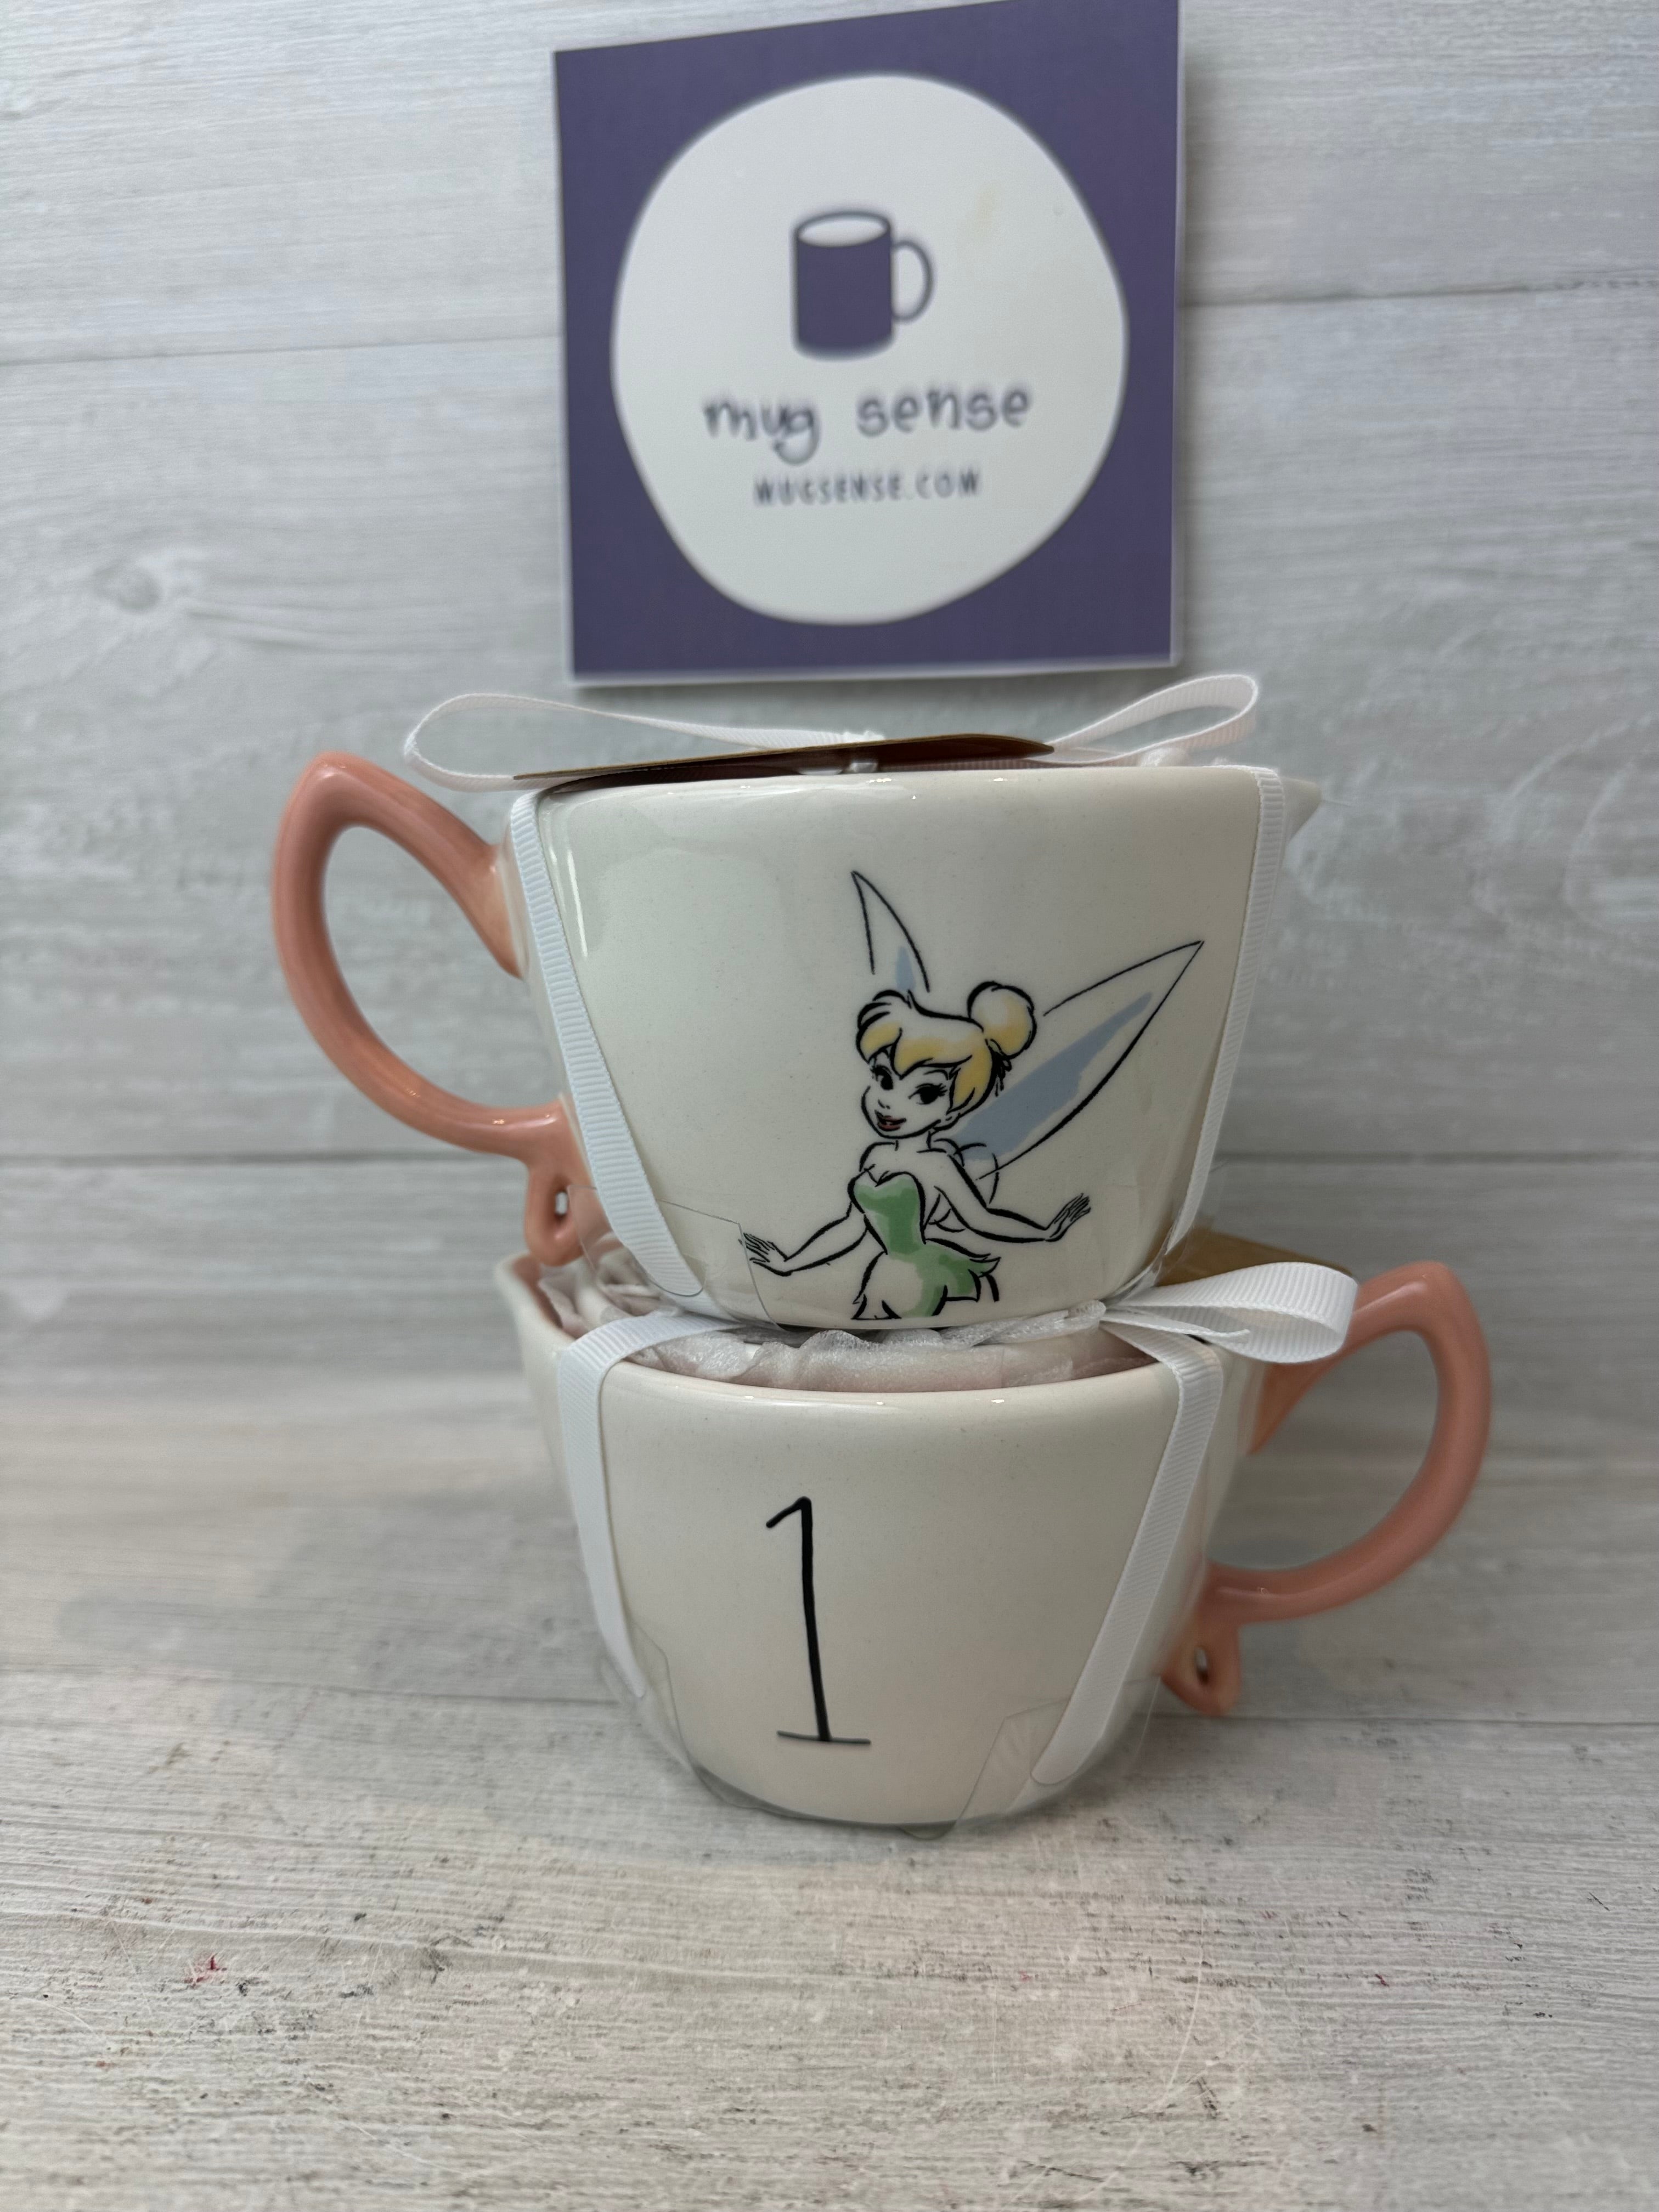 New Rae Dunn x Peter Pan white ceramic Disney Tinker Bell